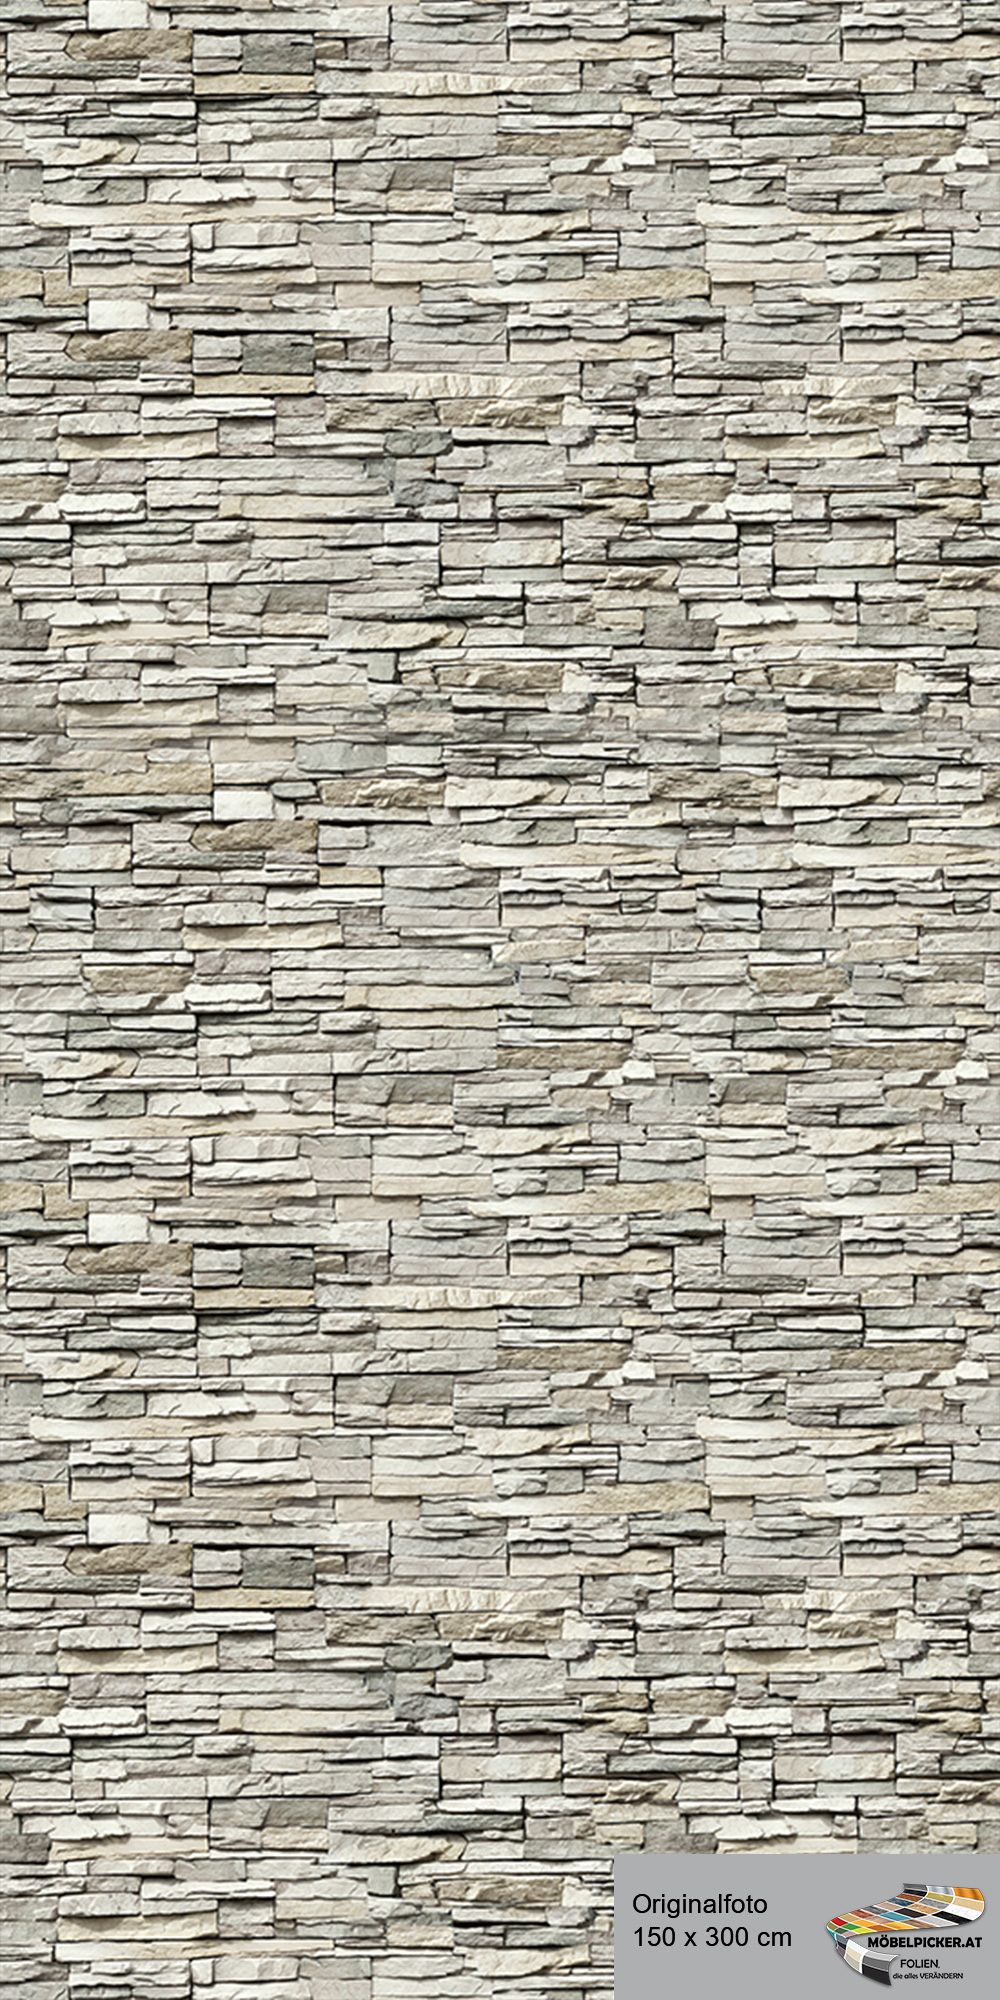 Alu-Design-Platte Sandstein Grau - Aluminiumverbundplatte für Bäder, WC, Büro, Wände, Wohnzimmer